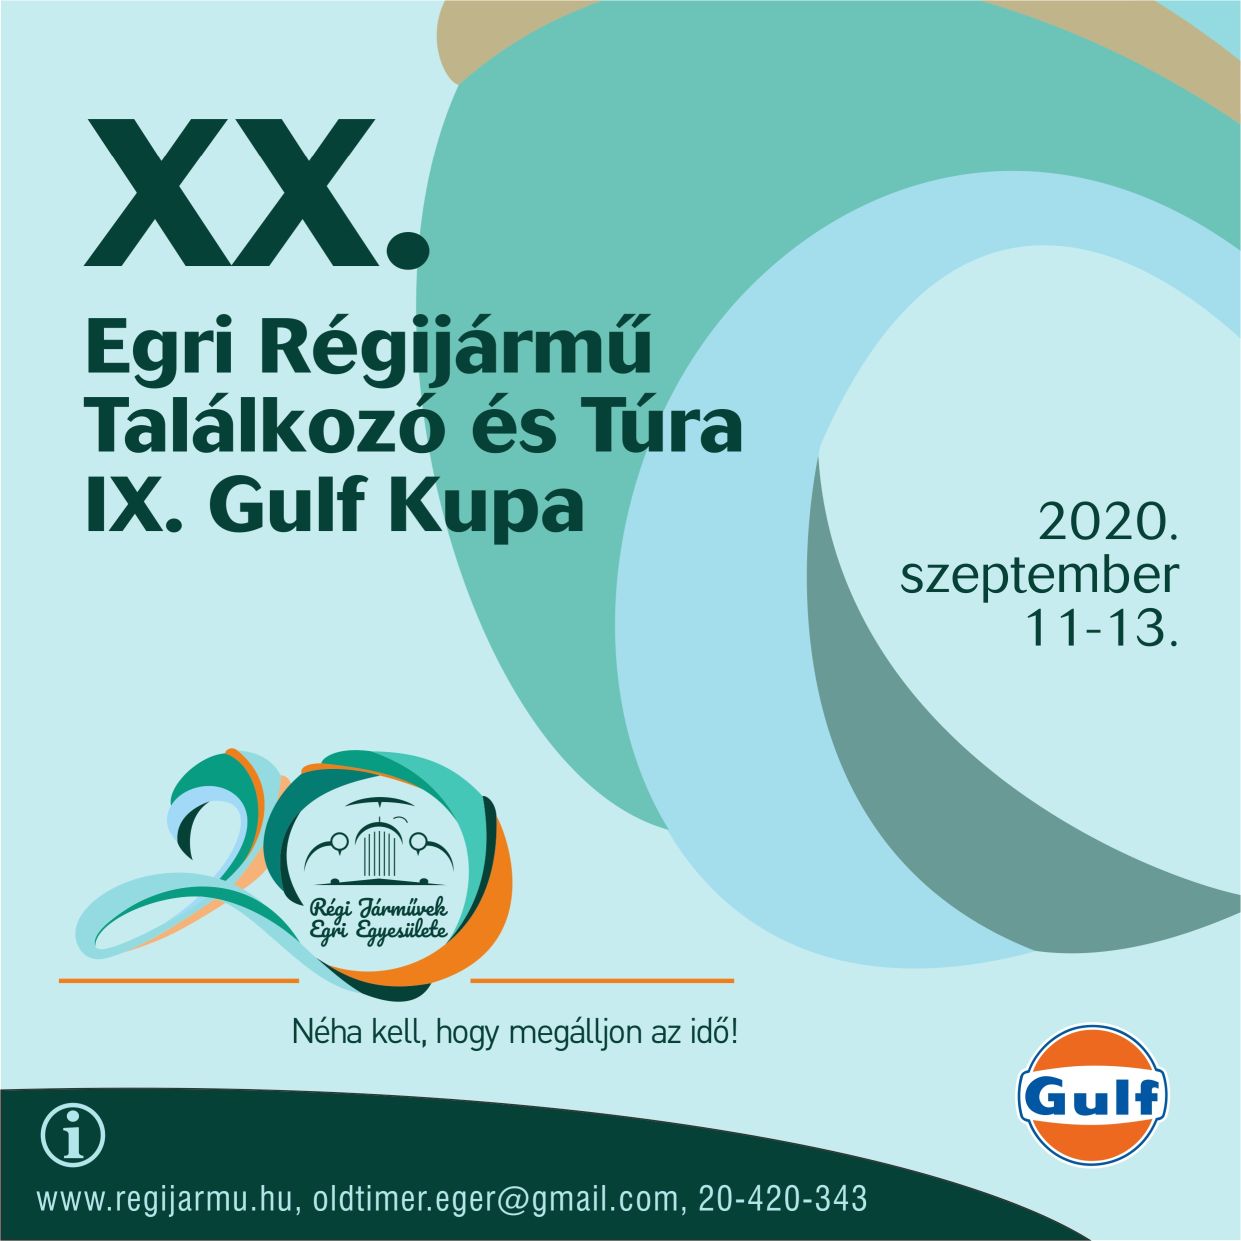 2020 XX. EGRI RÉGI JÁRMŰ TALÁLKOZÓ ÉS TÚRA, IX. GULF KUPA plakát